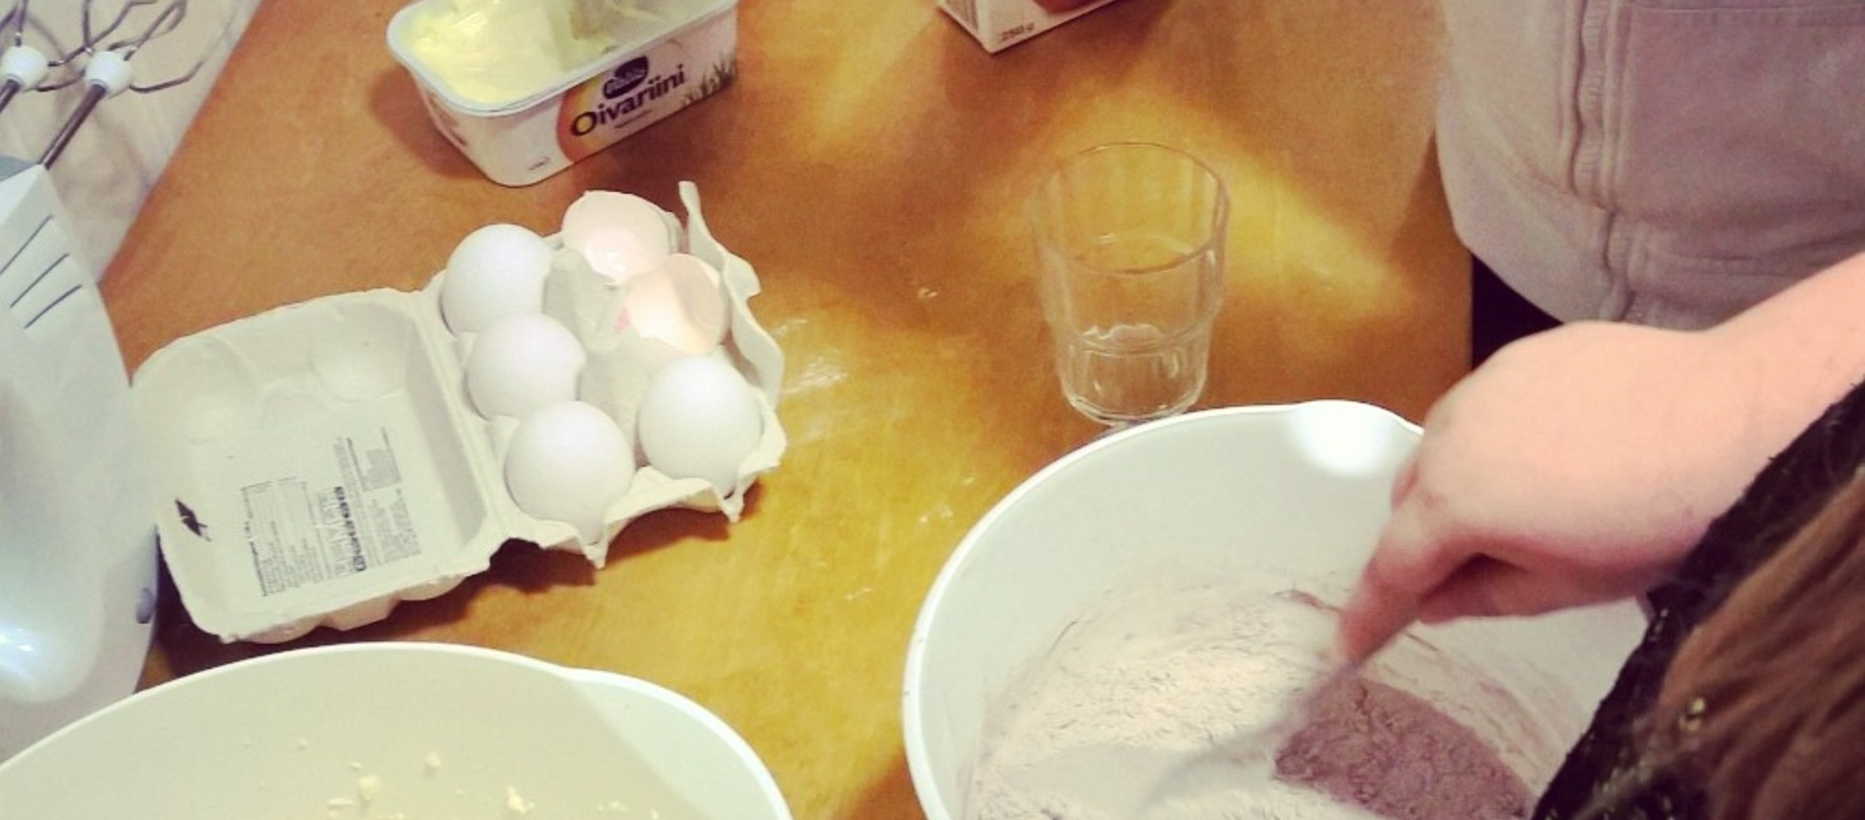 lapsen käsi sekoittaa taikinaa lusikalla pöydällä kananmunia sähkövatkain jauhokulho lasi margariini